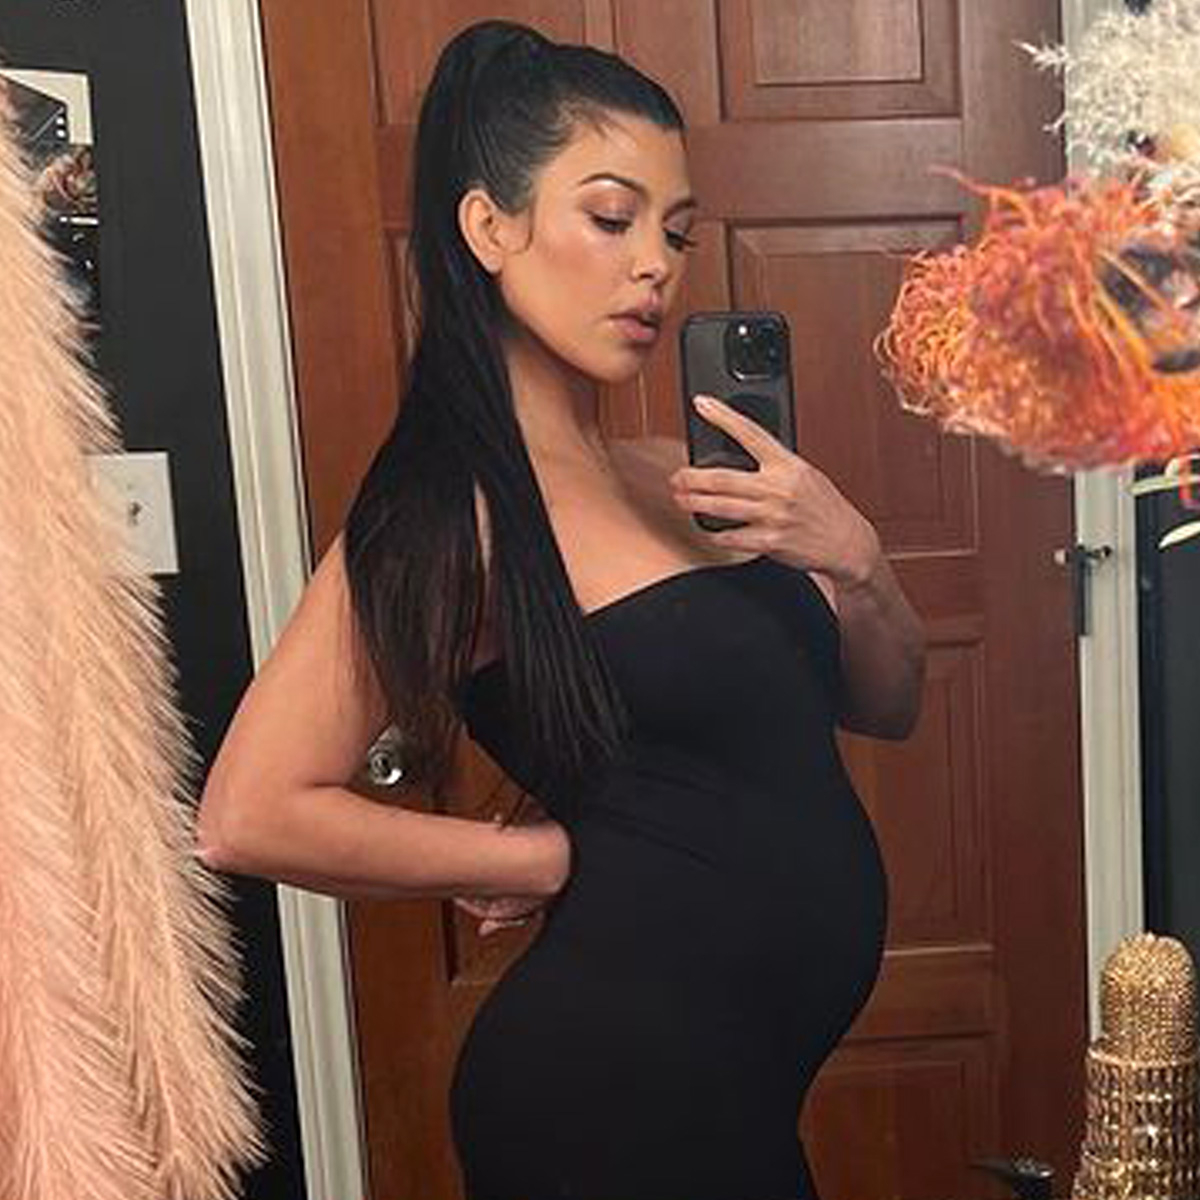 Kourtney Kardashian Shares Her Top Pregnancy Snacks